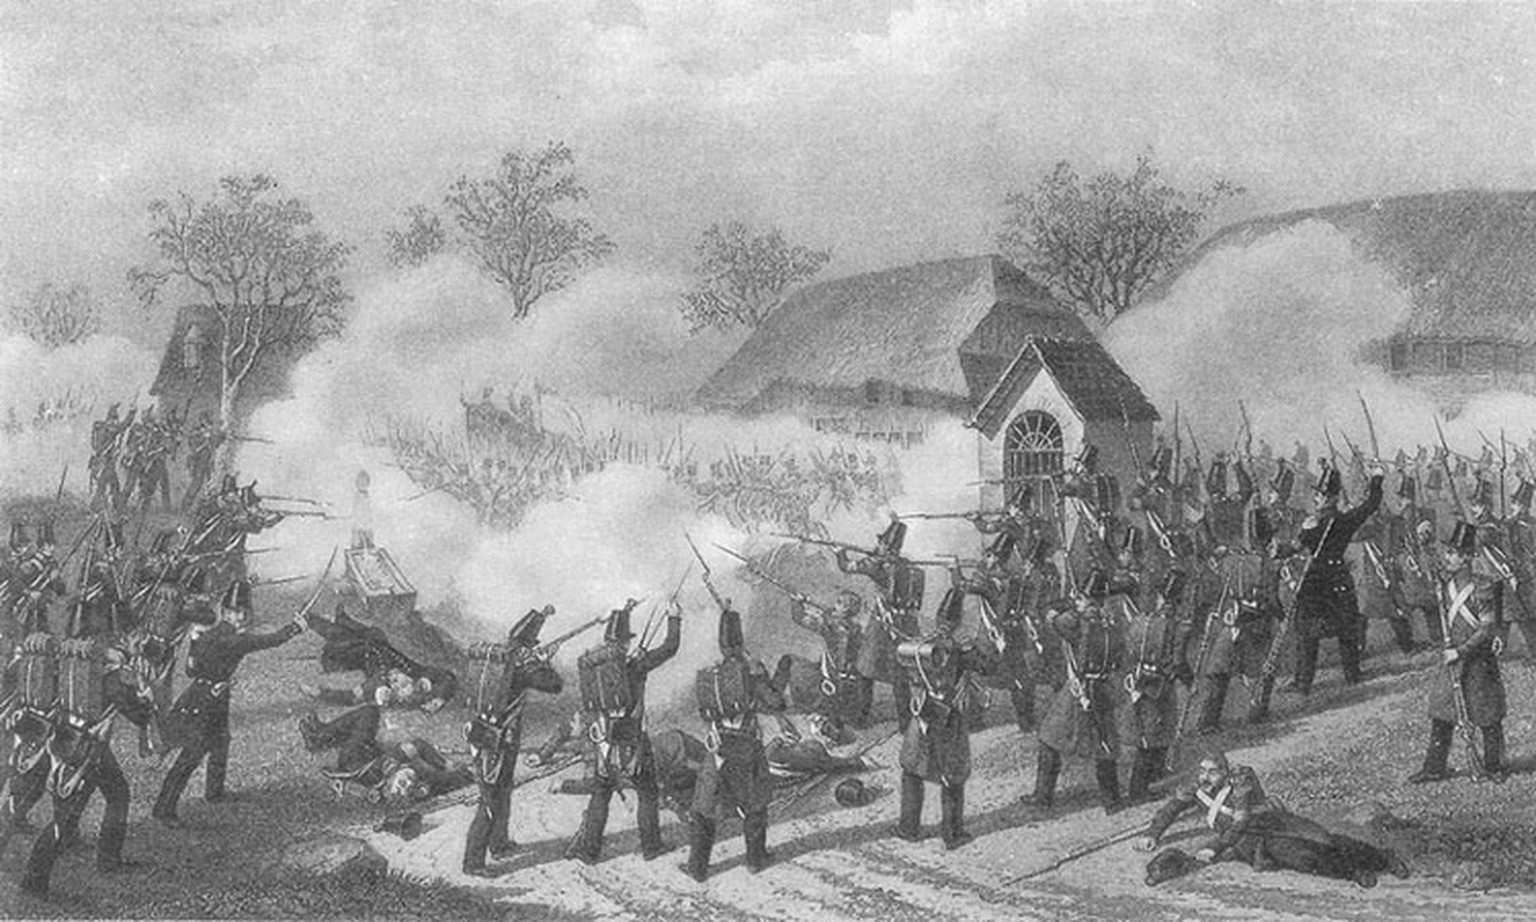 Gefecht von Geltwil 1847
wikimedia